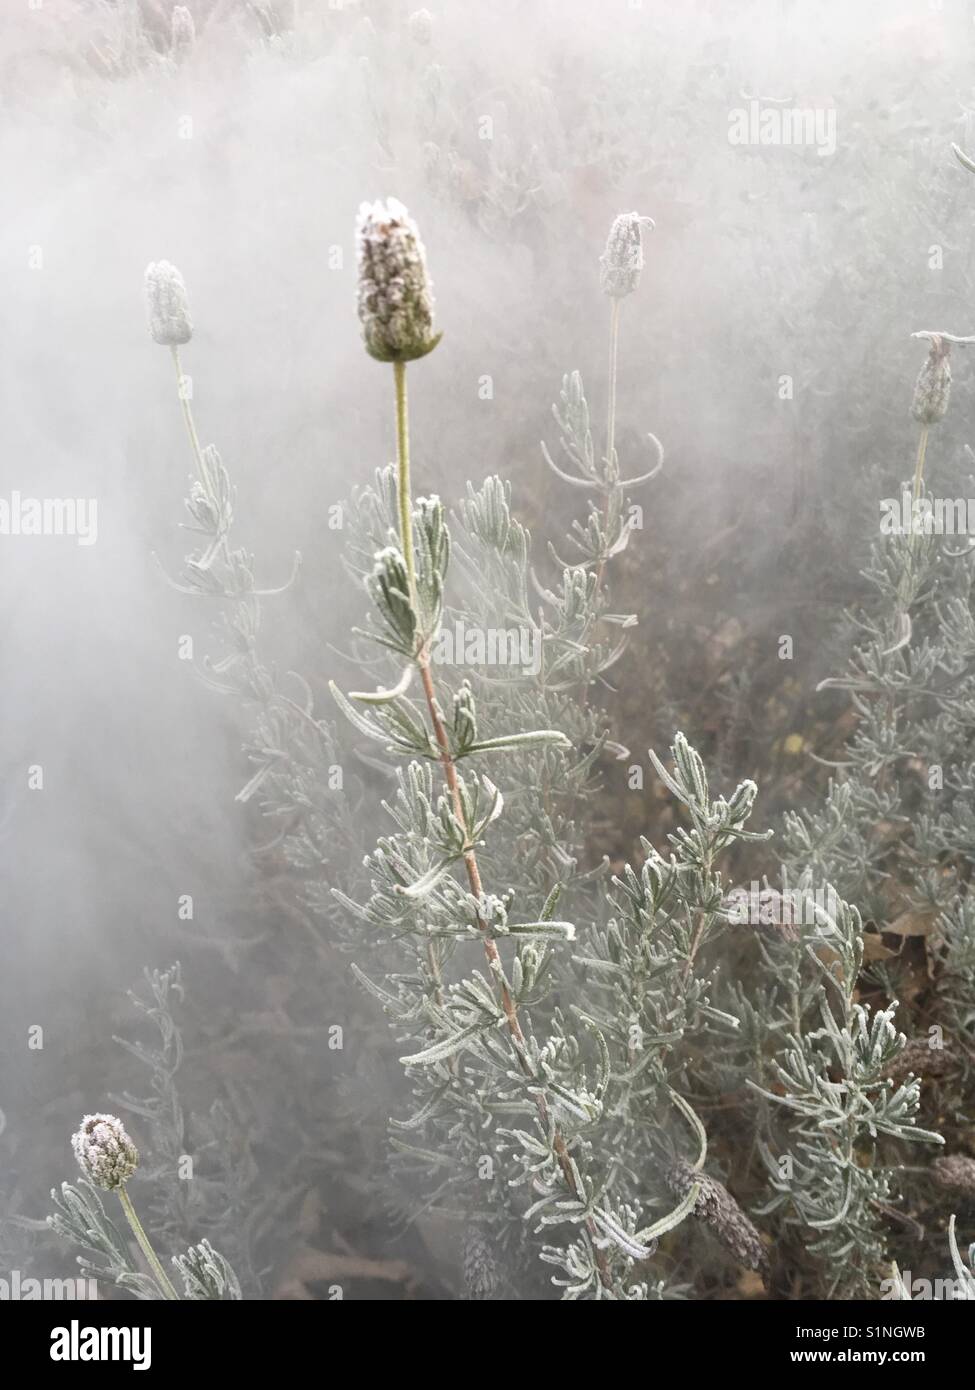 Frozen Lavendel in fog Stock Photo